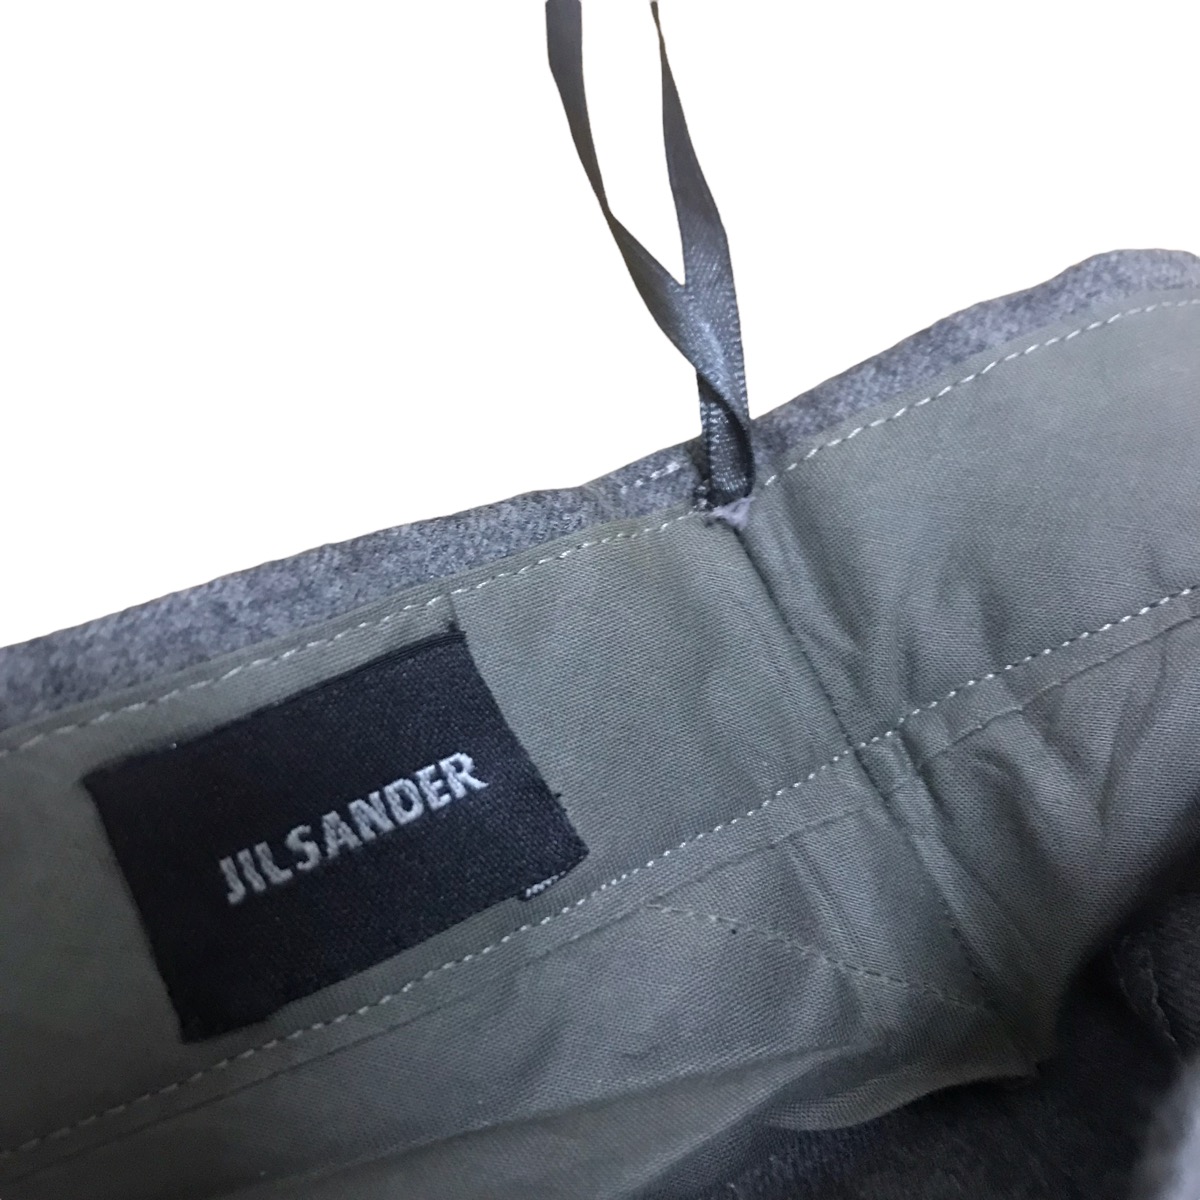 Jil sander taylor made casmere pants - 3